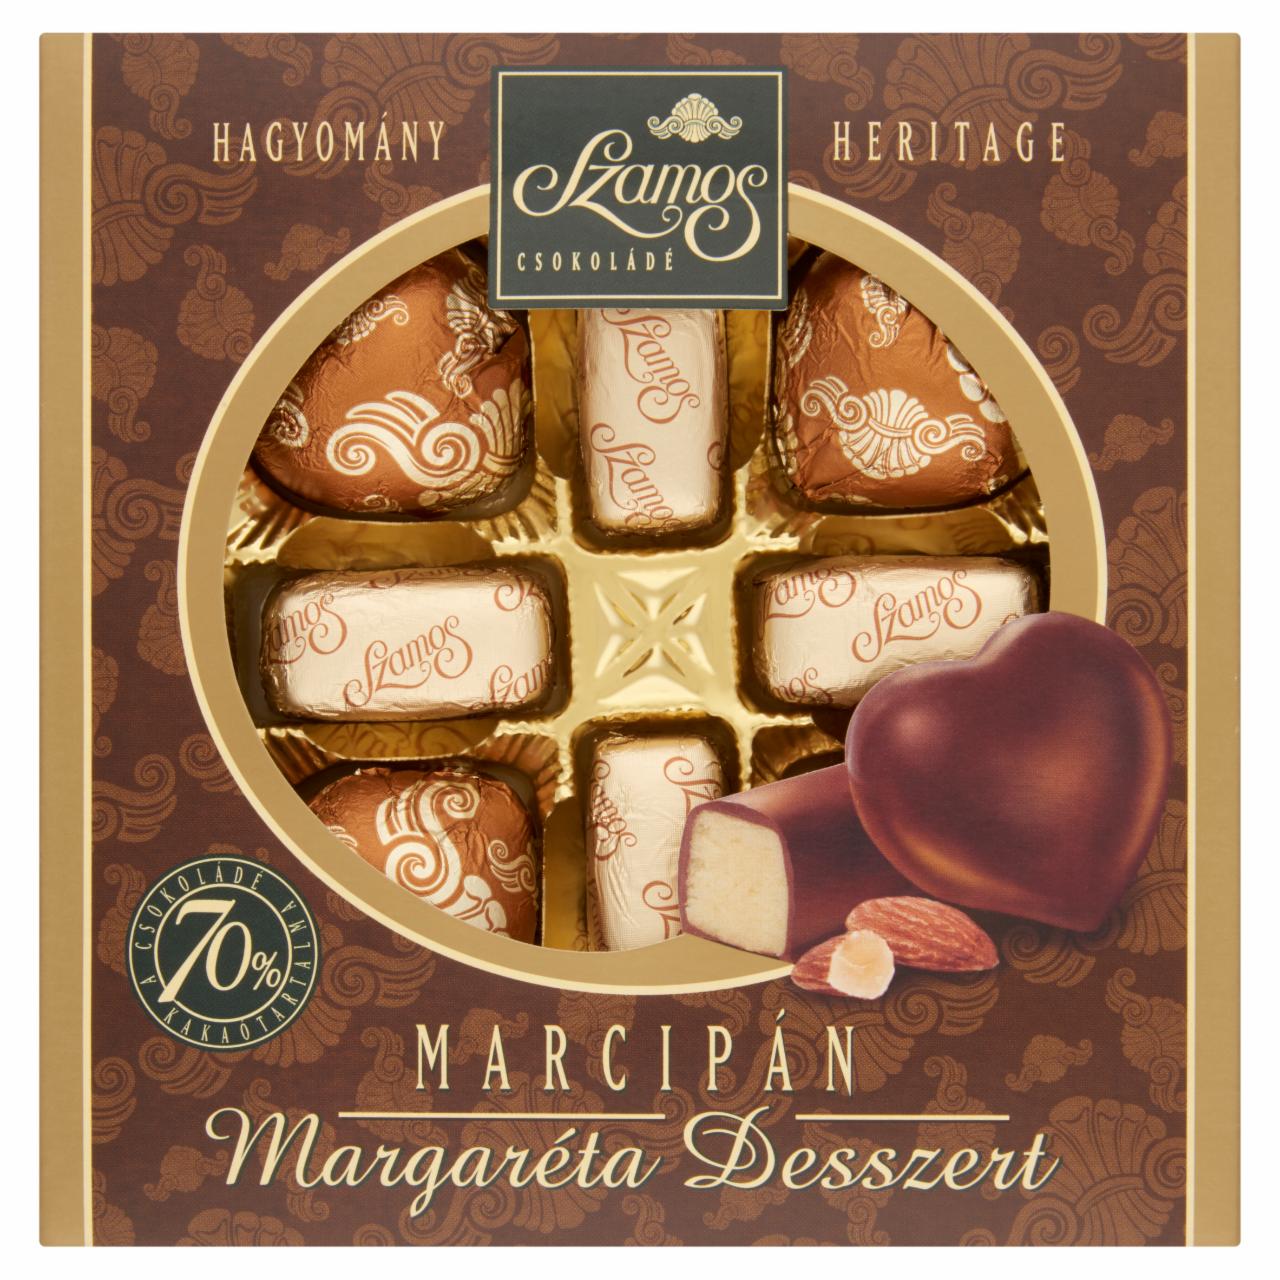 Képek - Szamos Margaréta Desszert mandulamarcipán csokoládé bevonattal 8 db 100 g